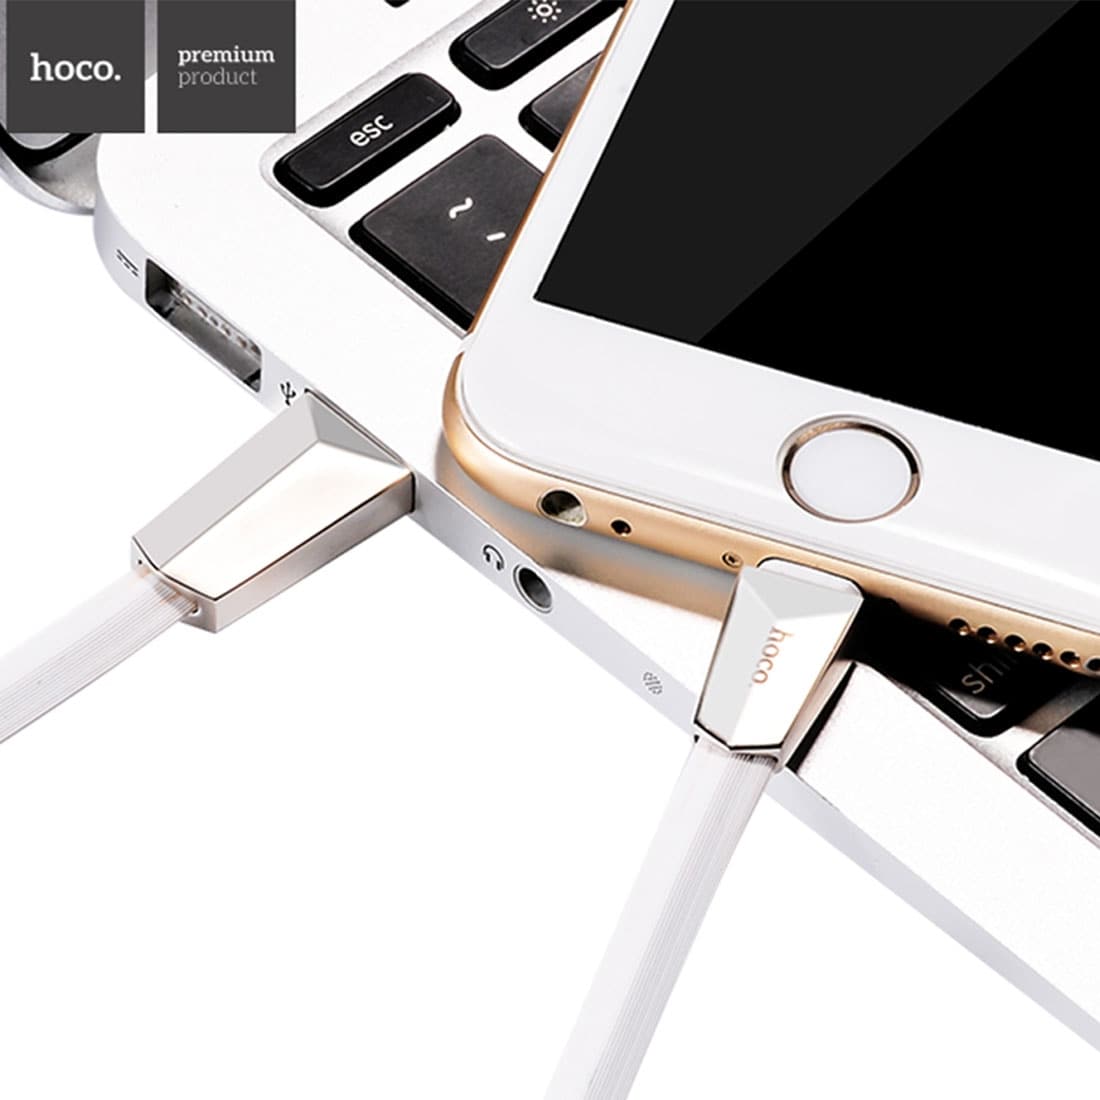 Hoco USB-ladekabel for iPhone 6, 7, 8 og X – Hvit